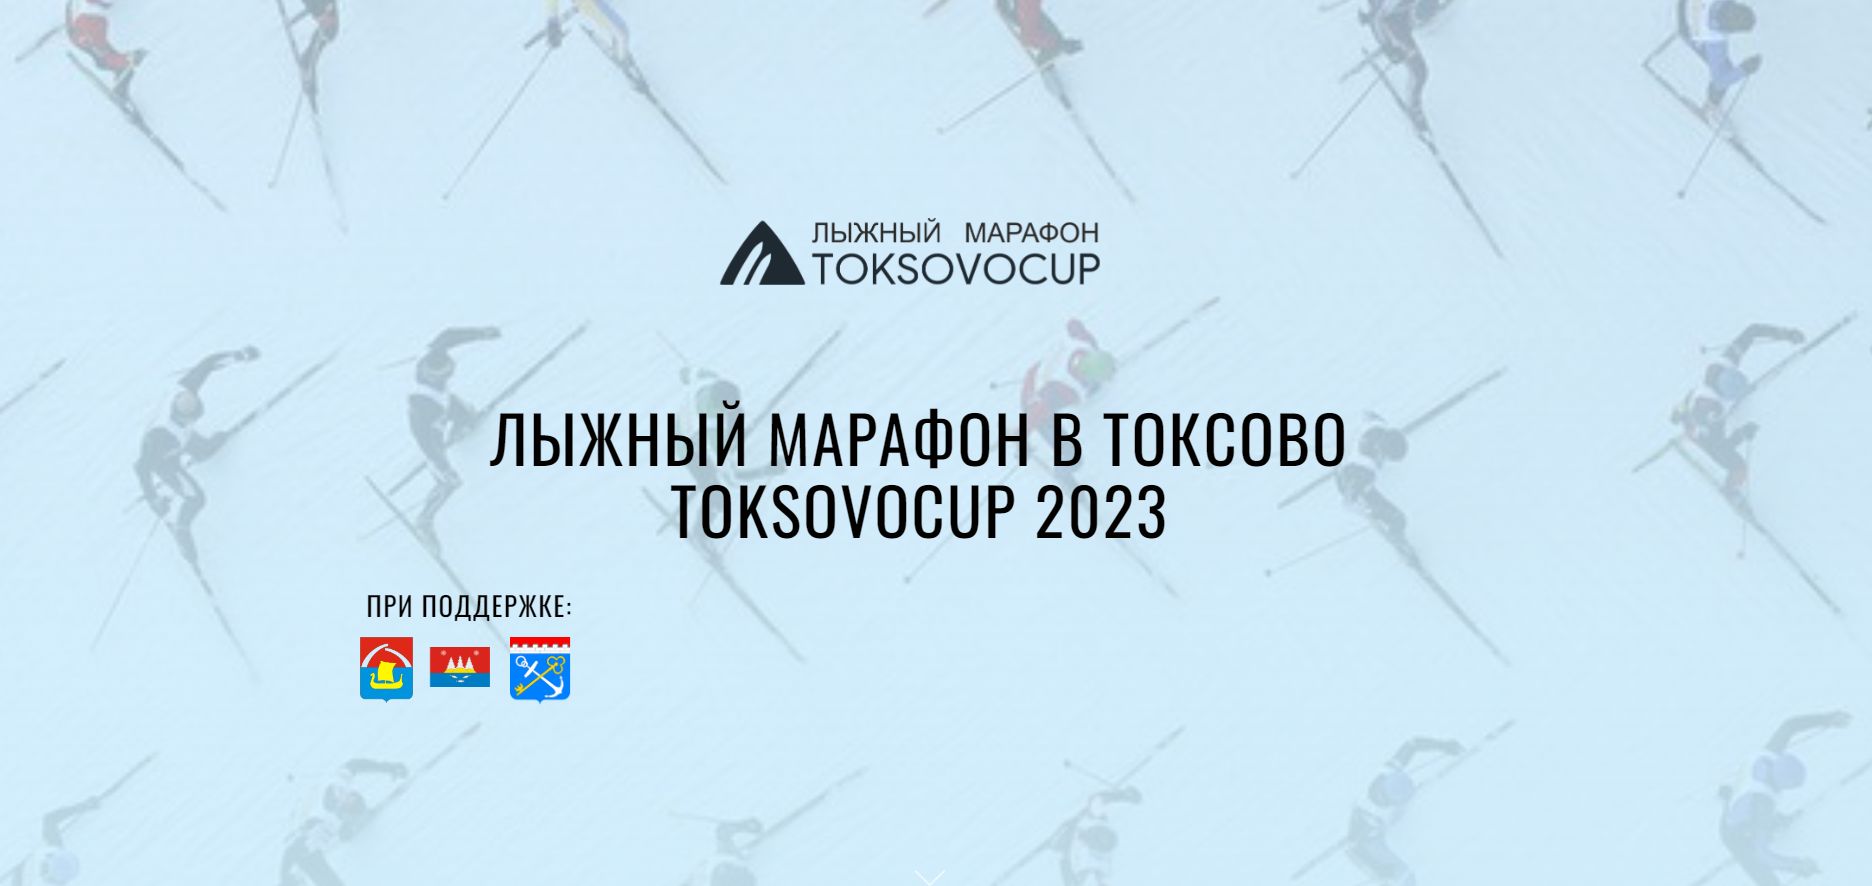 В феврале в Токсово пройдет традиционный лыжный марафон TOKSOVOCUP